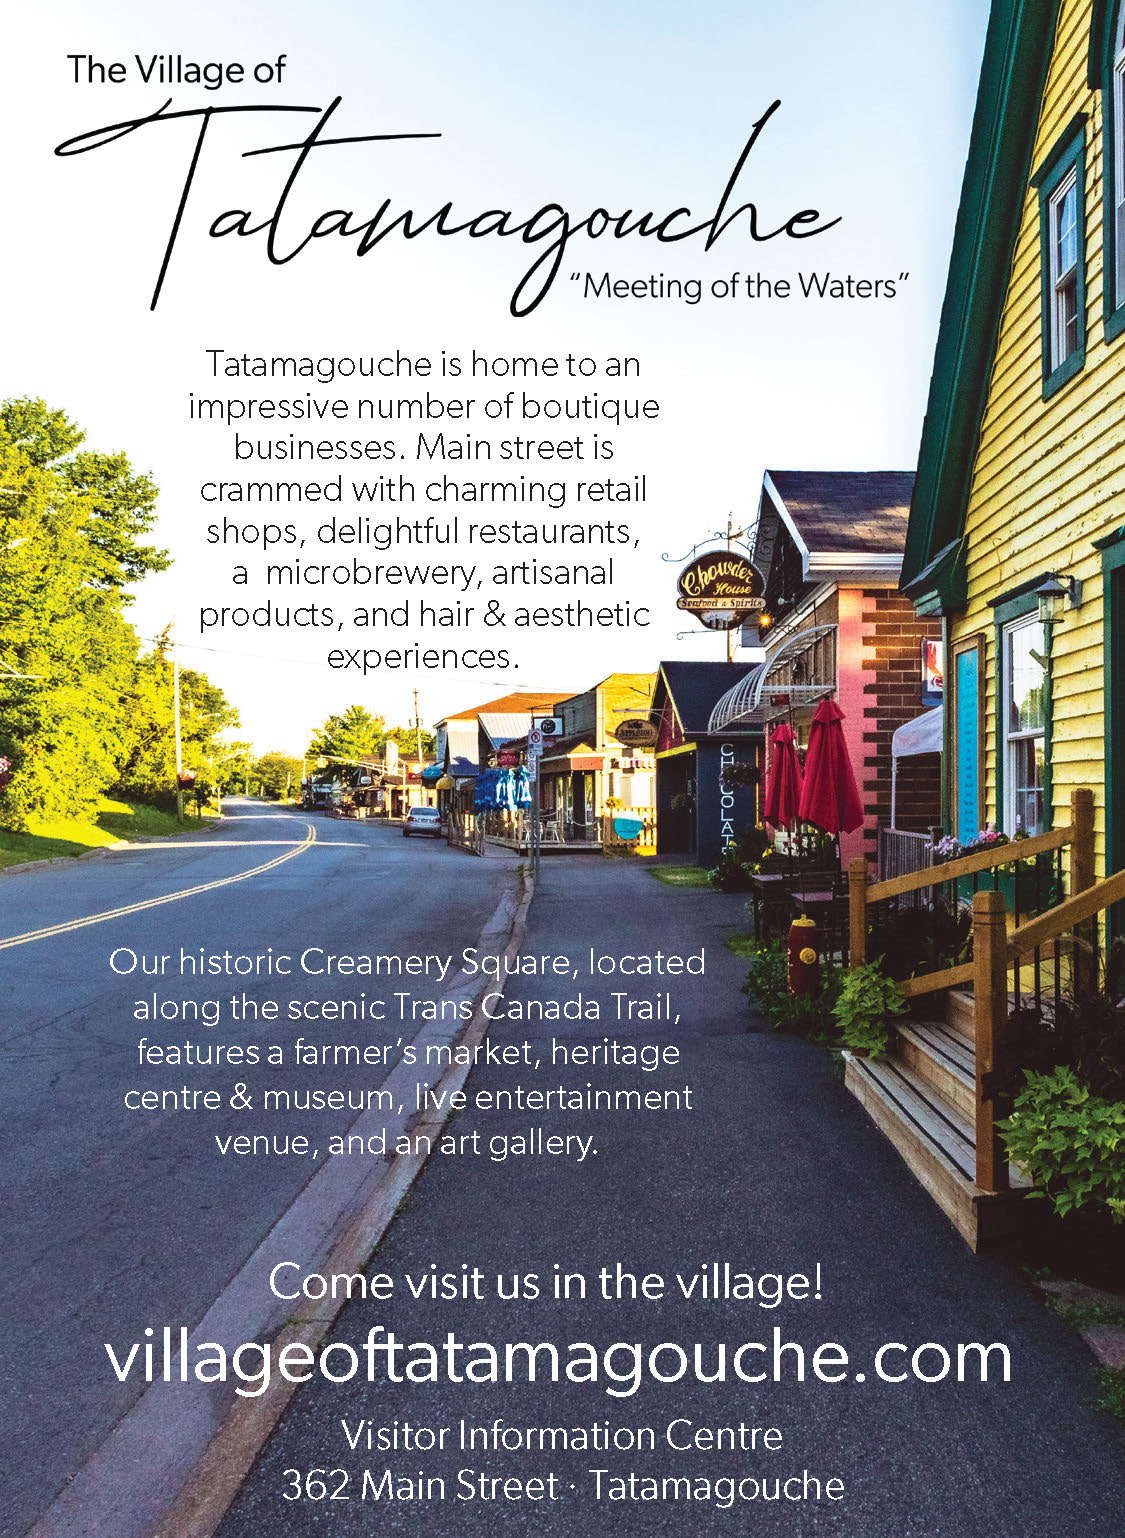 Village of Tatamagouche, Nova Scotia